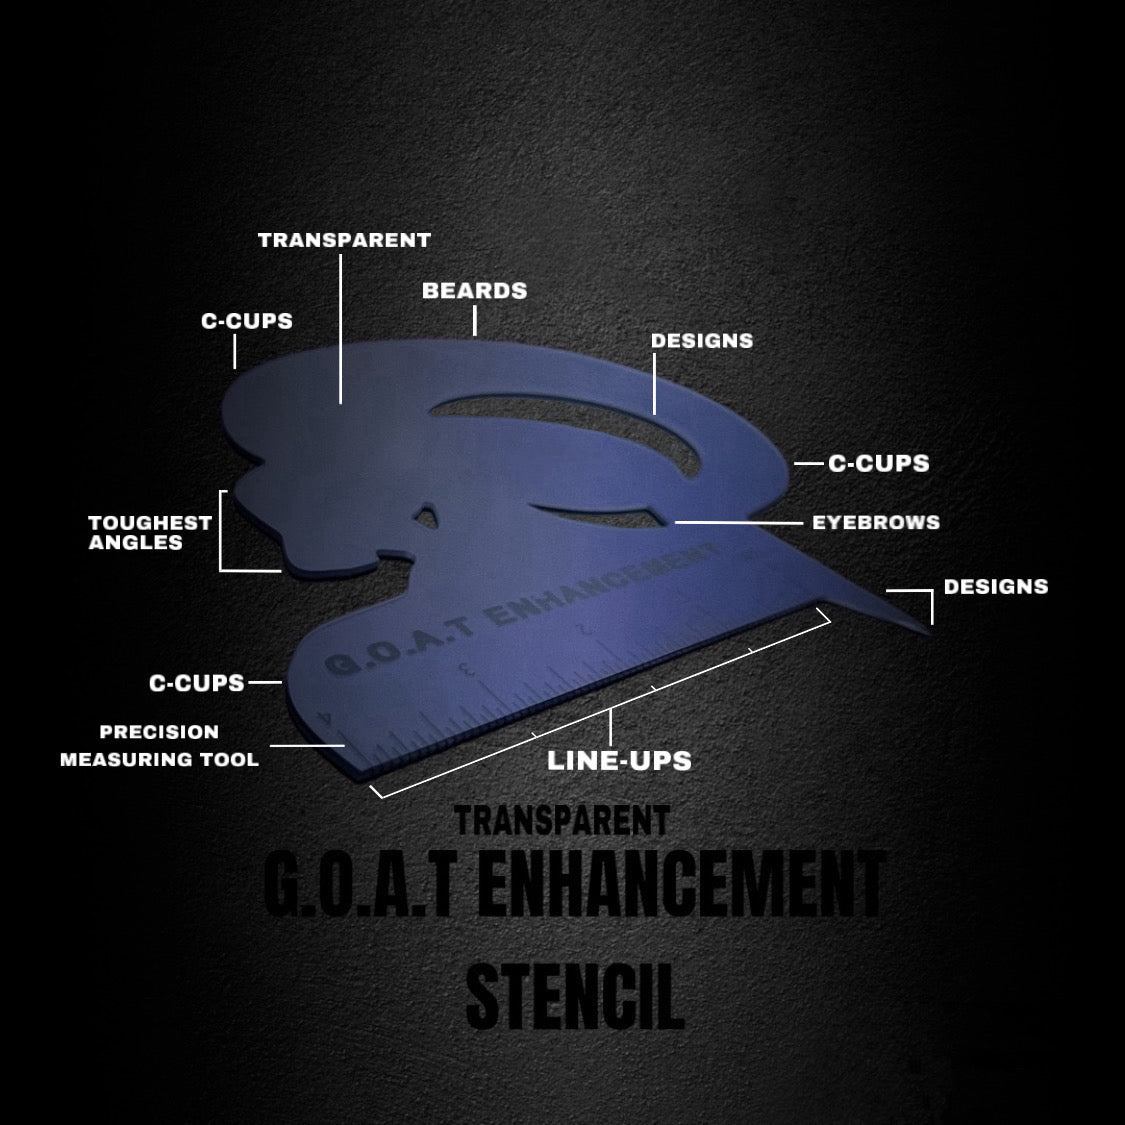 G.O.A.T ENHANCEMENT STENCIL